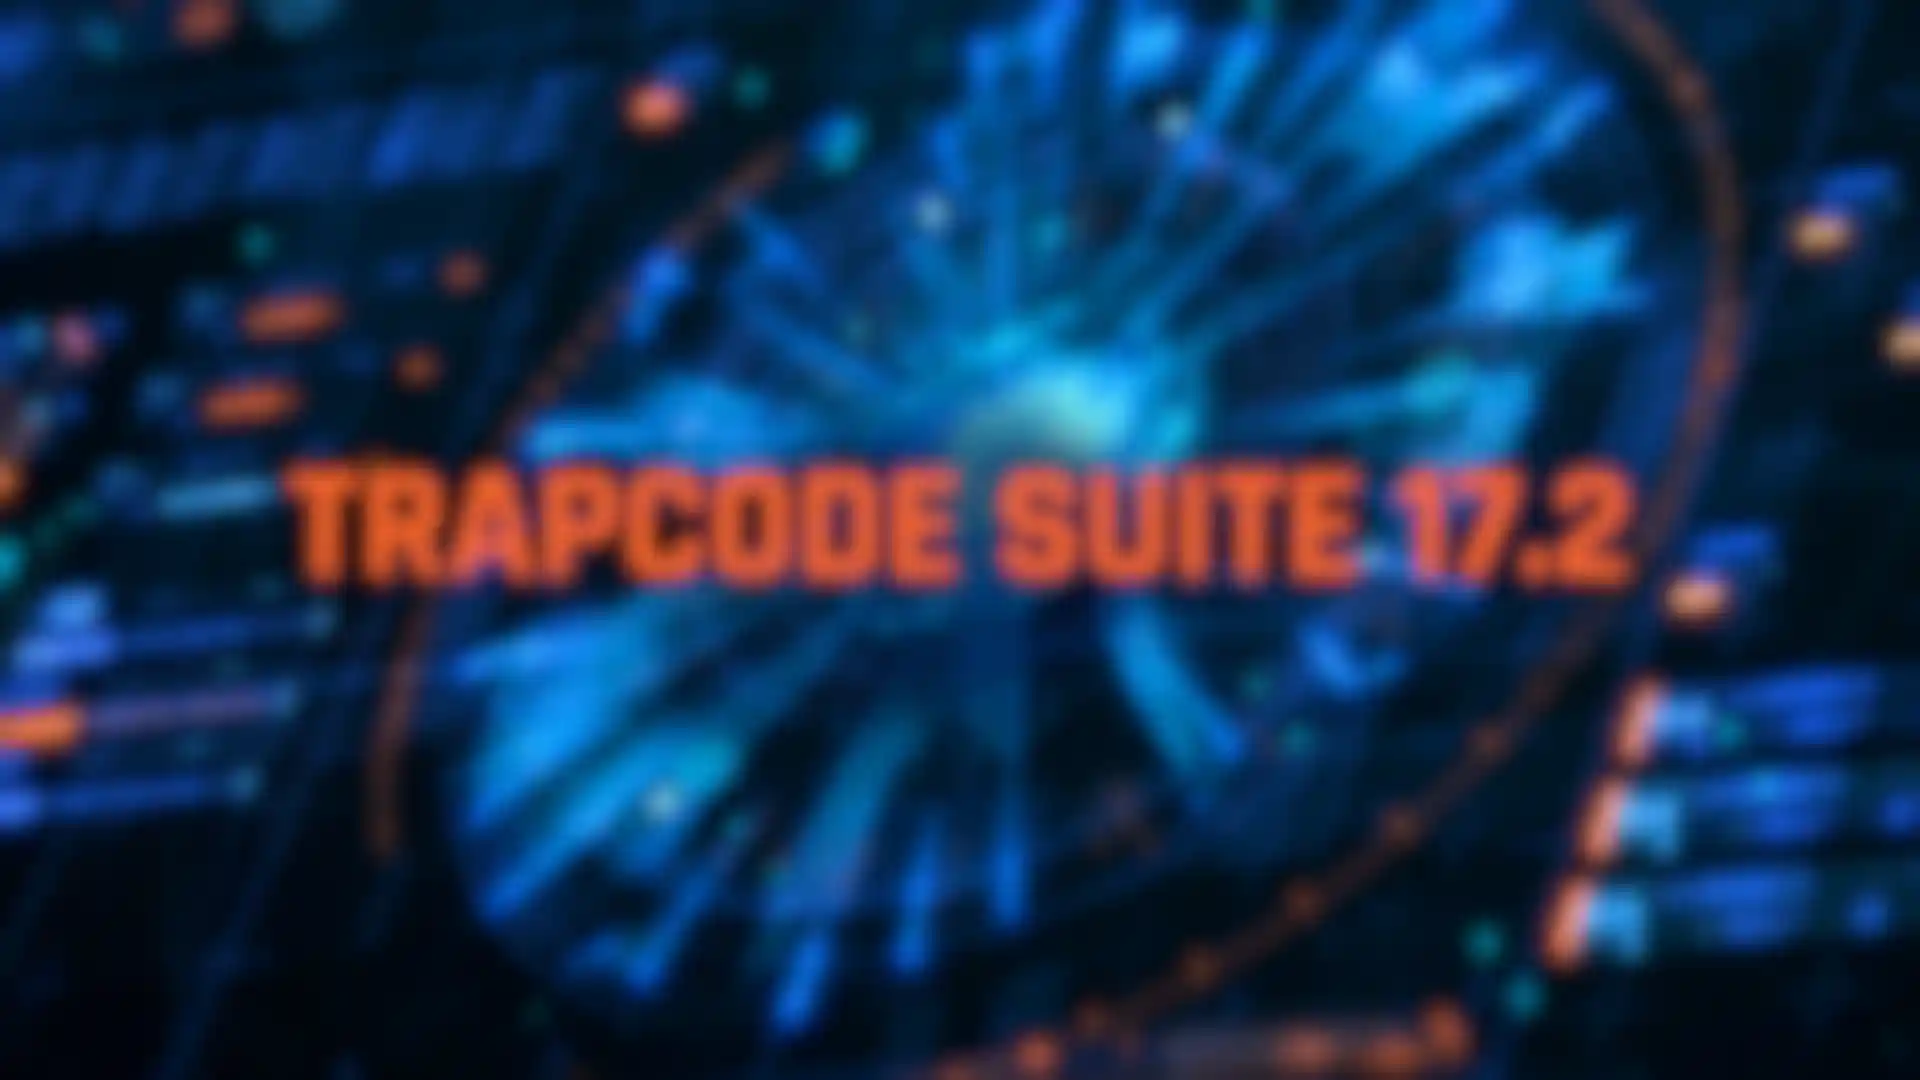 Trapcode Suite 17.2 jetzt verfügbar image